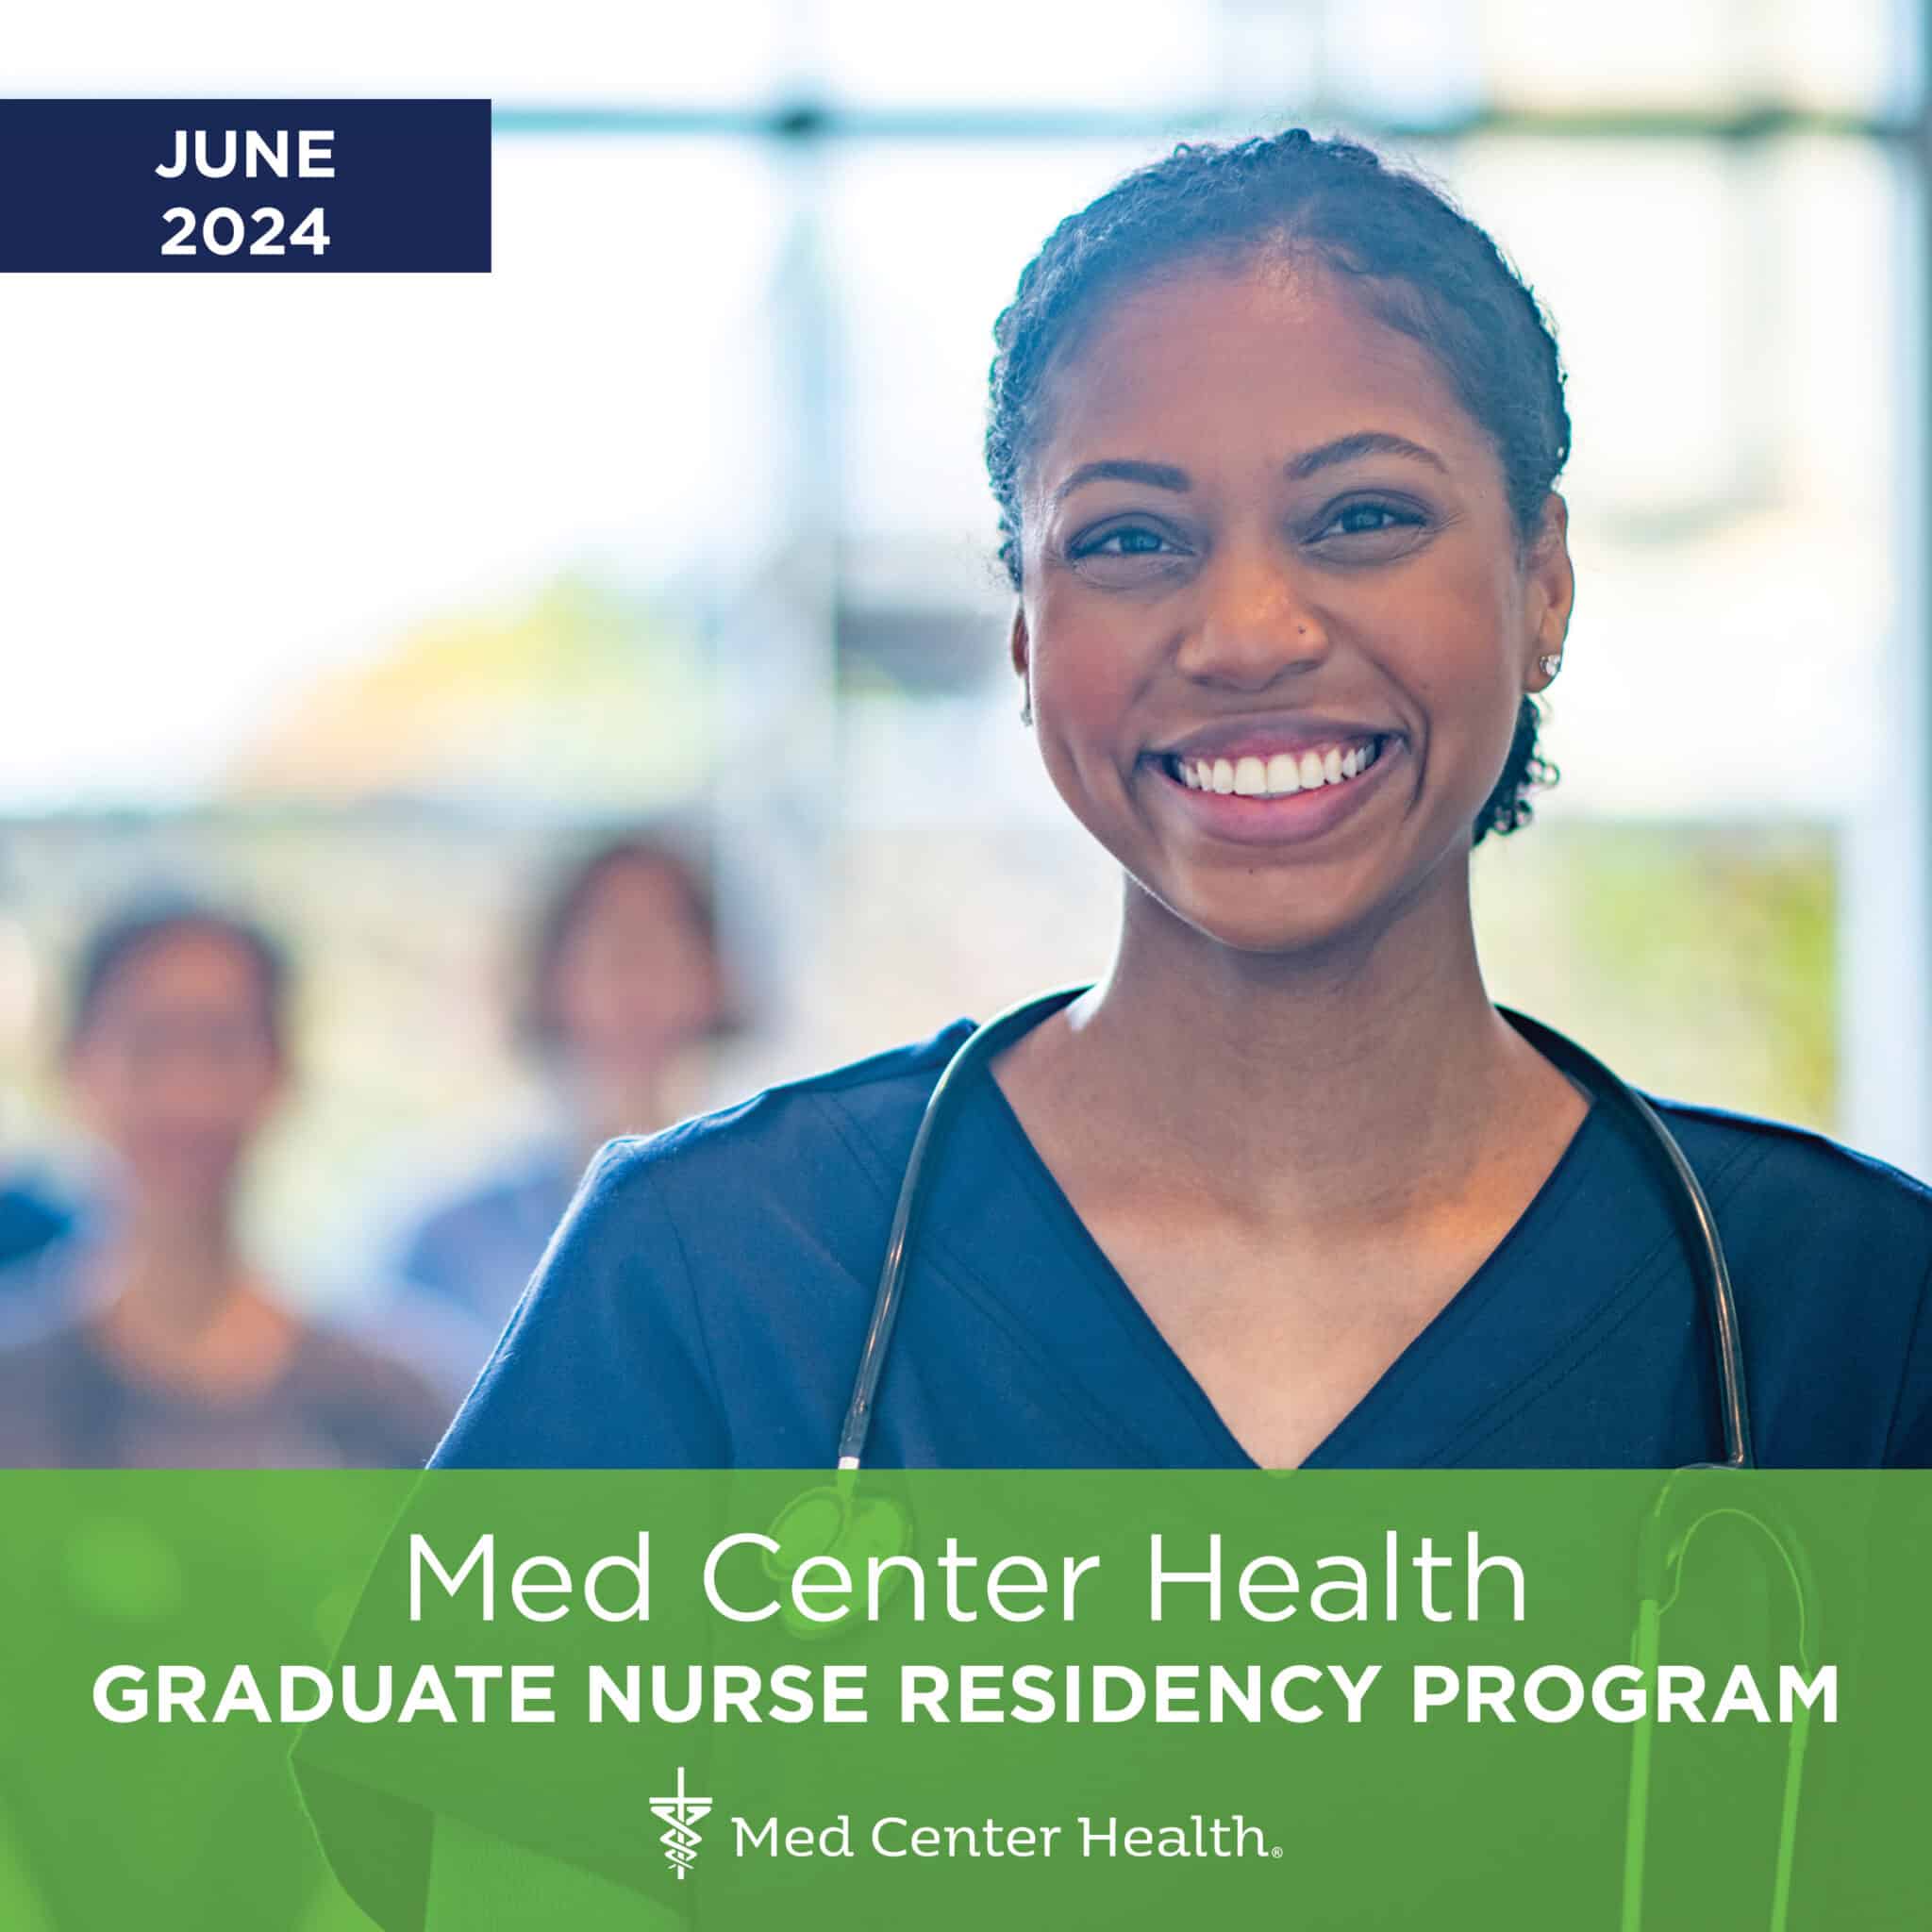 https://medcenterhealth.org/wp-content/uploads/240115-Graduate-Nurse-Residency-Program-social_v4-scaled.jpg